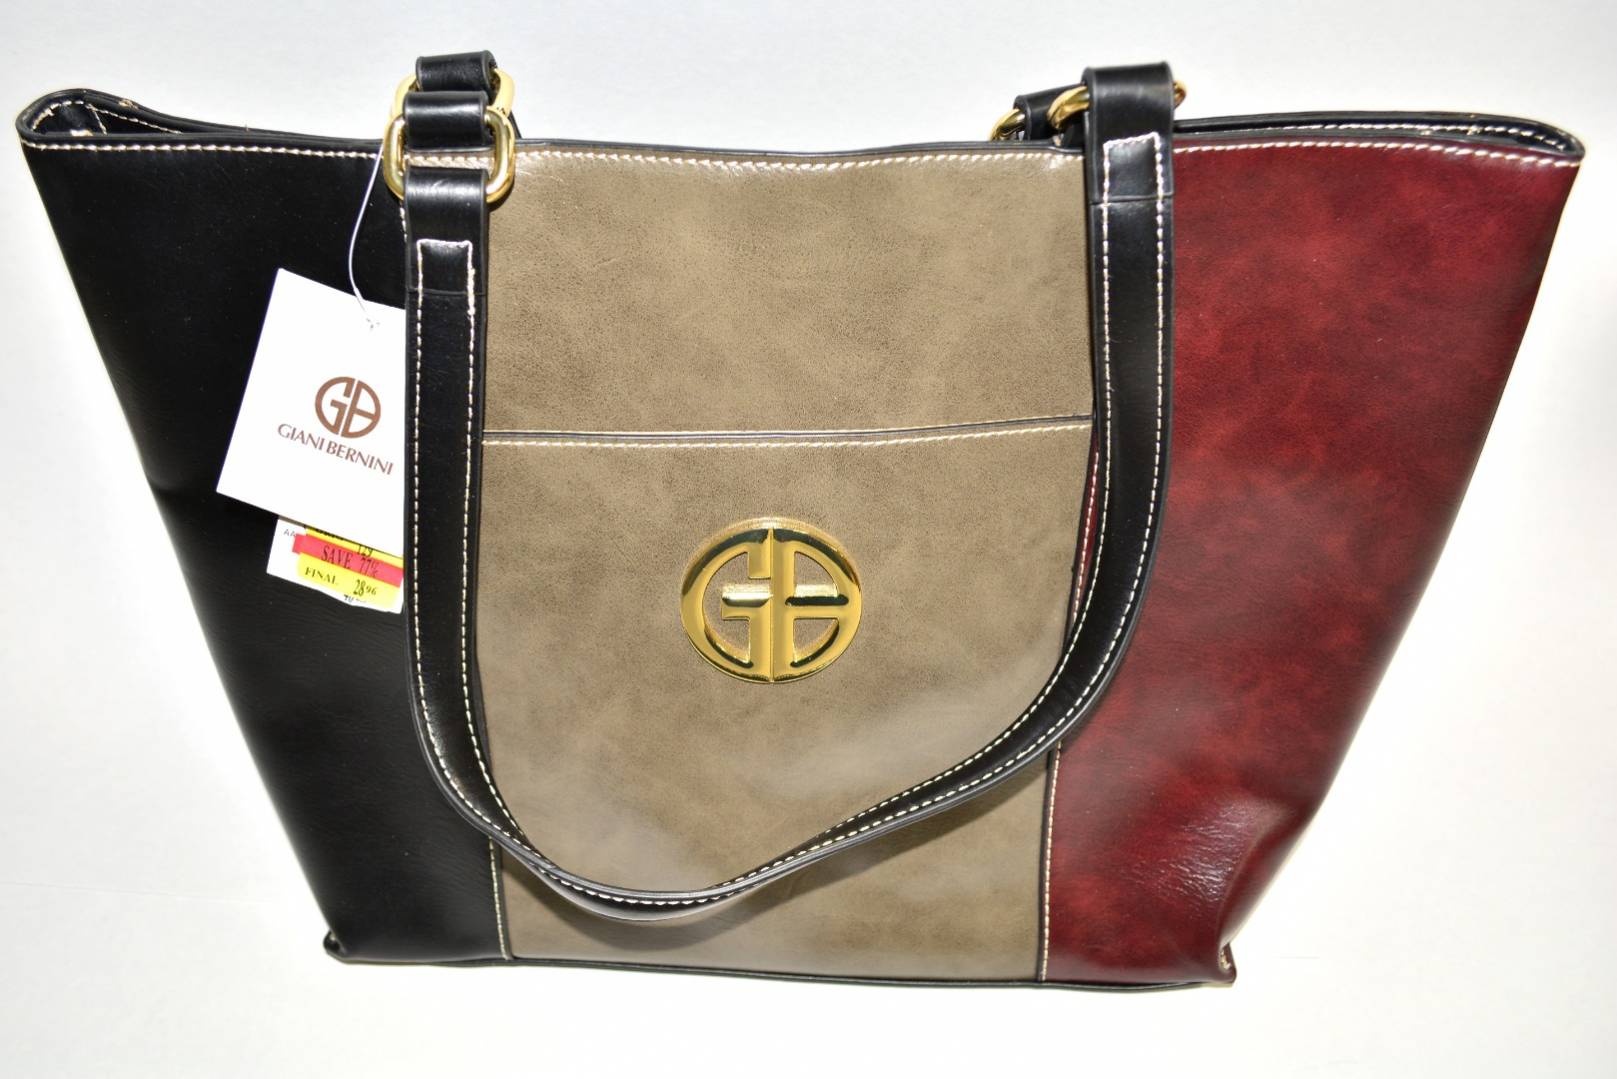 Top Five Luxury Handbag Brands to Invest in Now